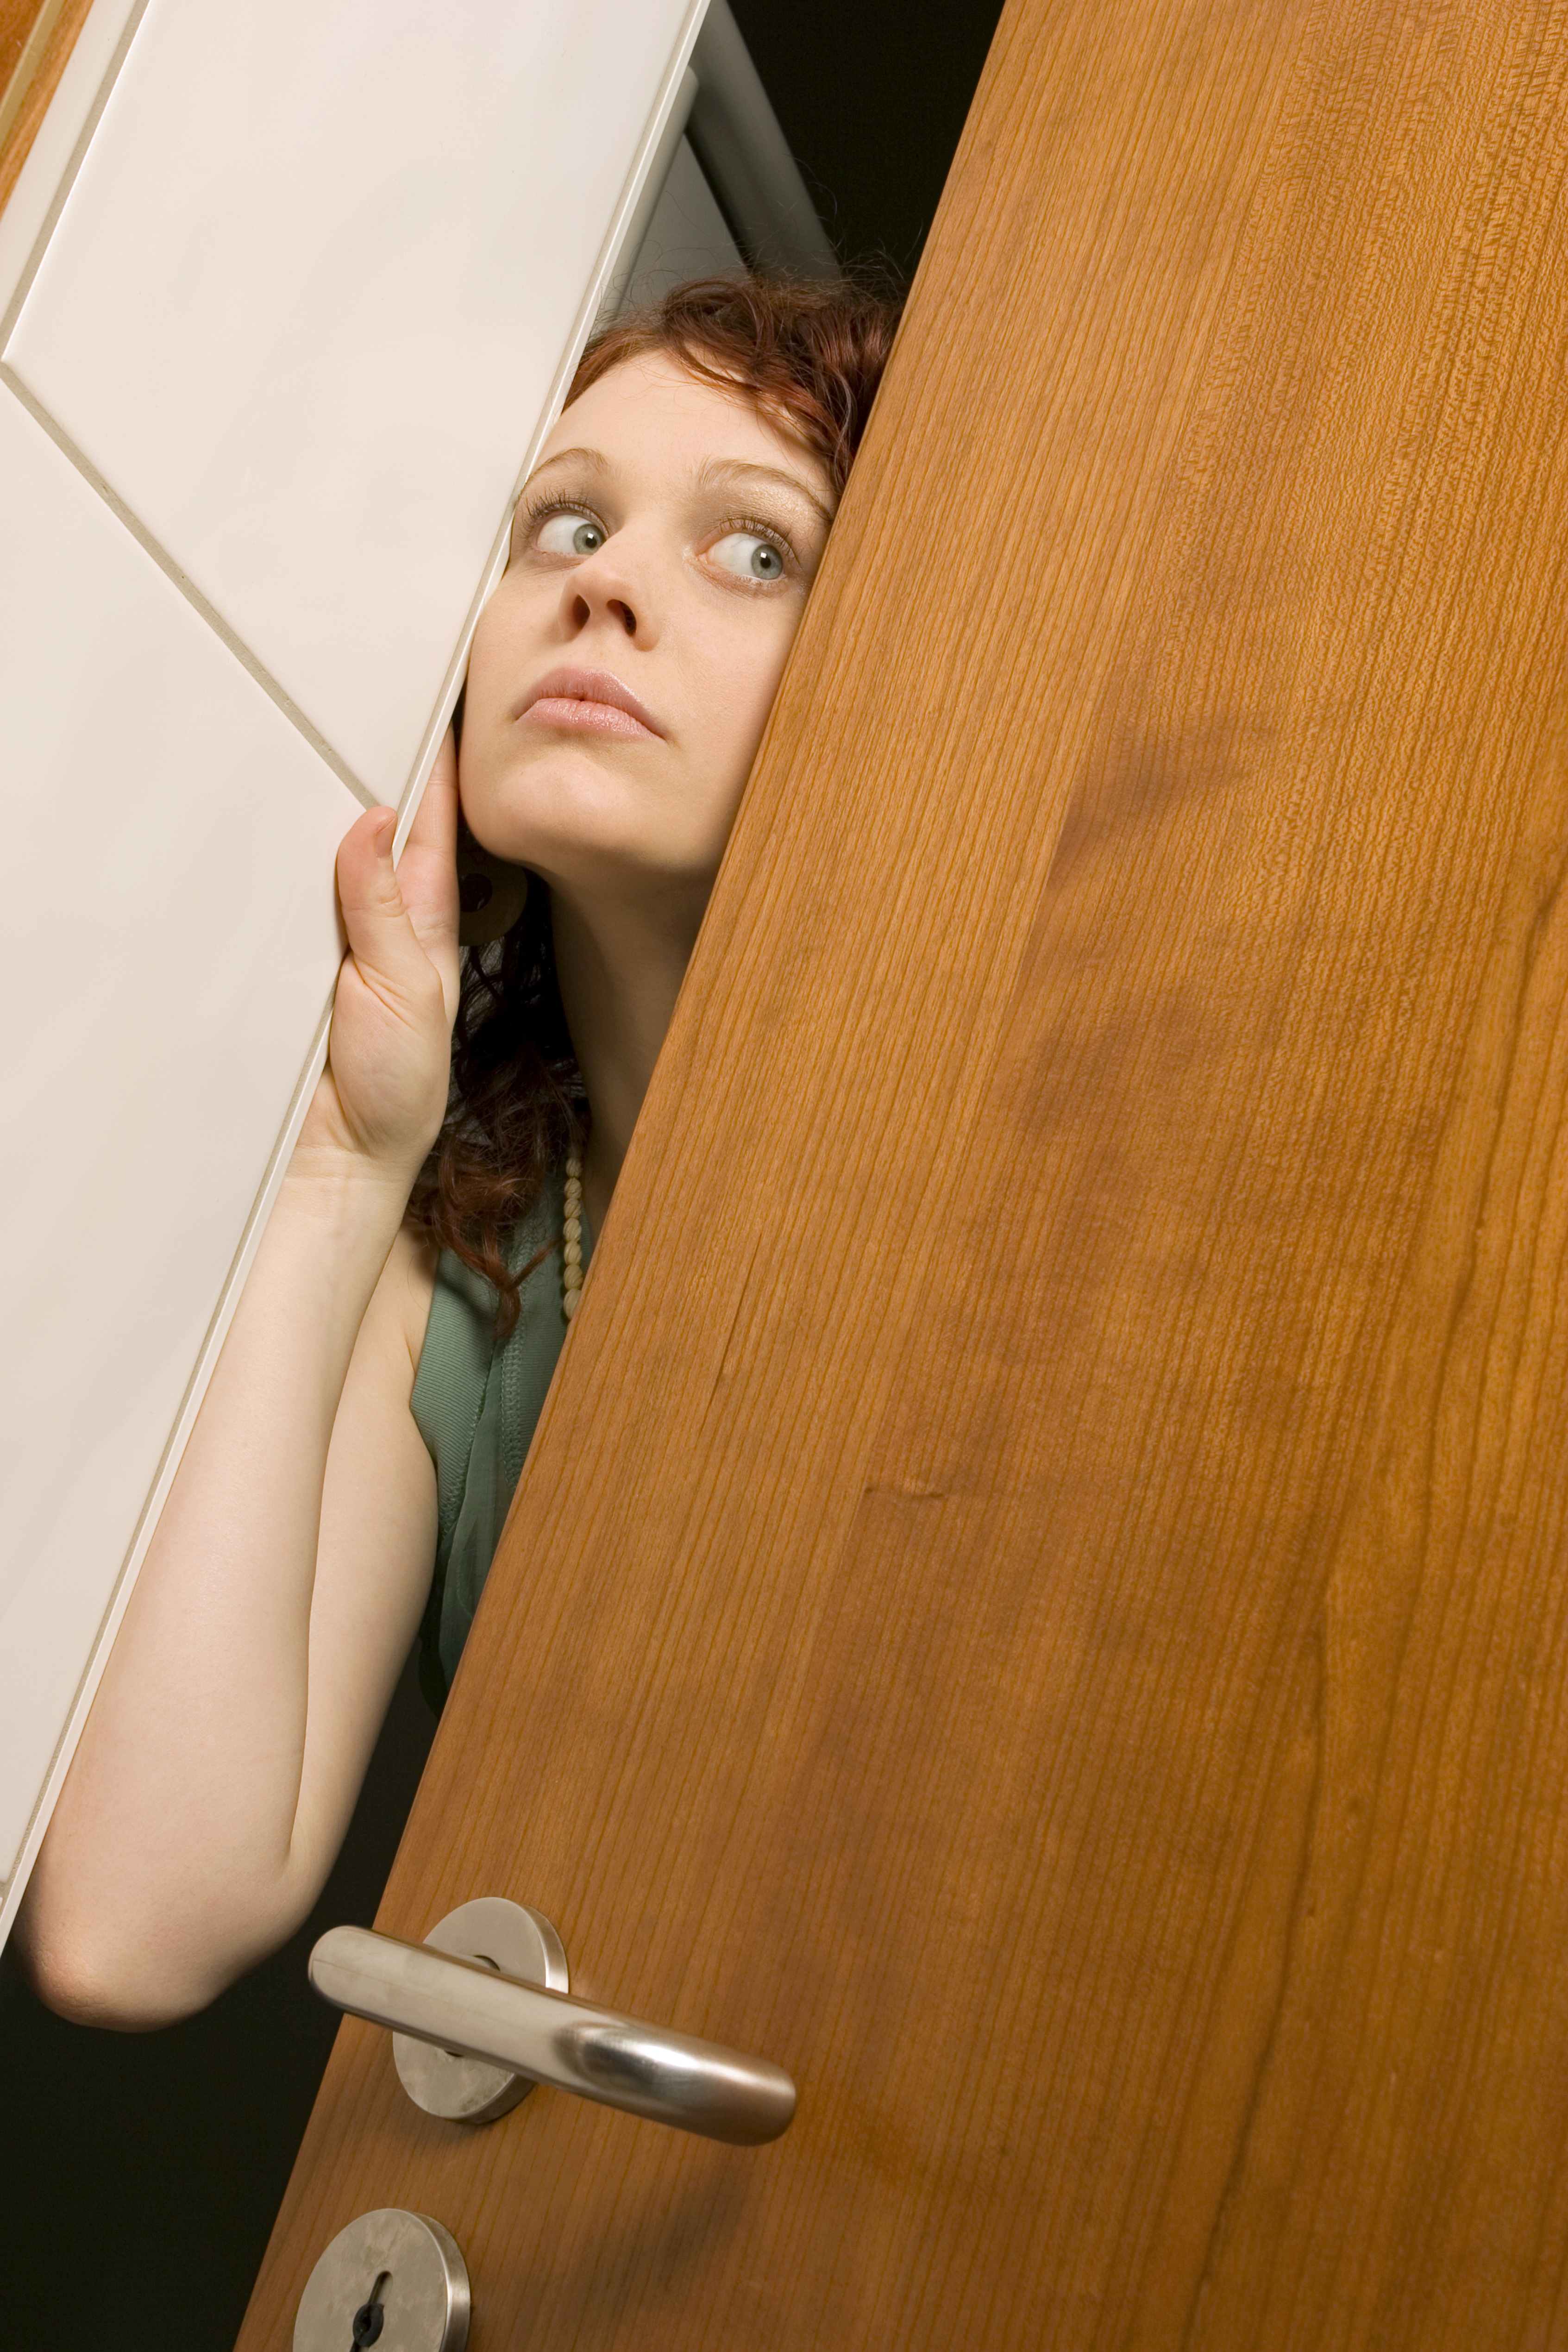 Femme jetant un coup d'œil à travers une porte | Source : Getty Images